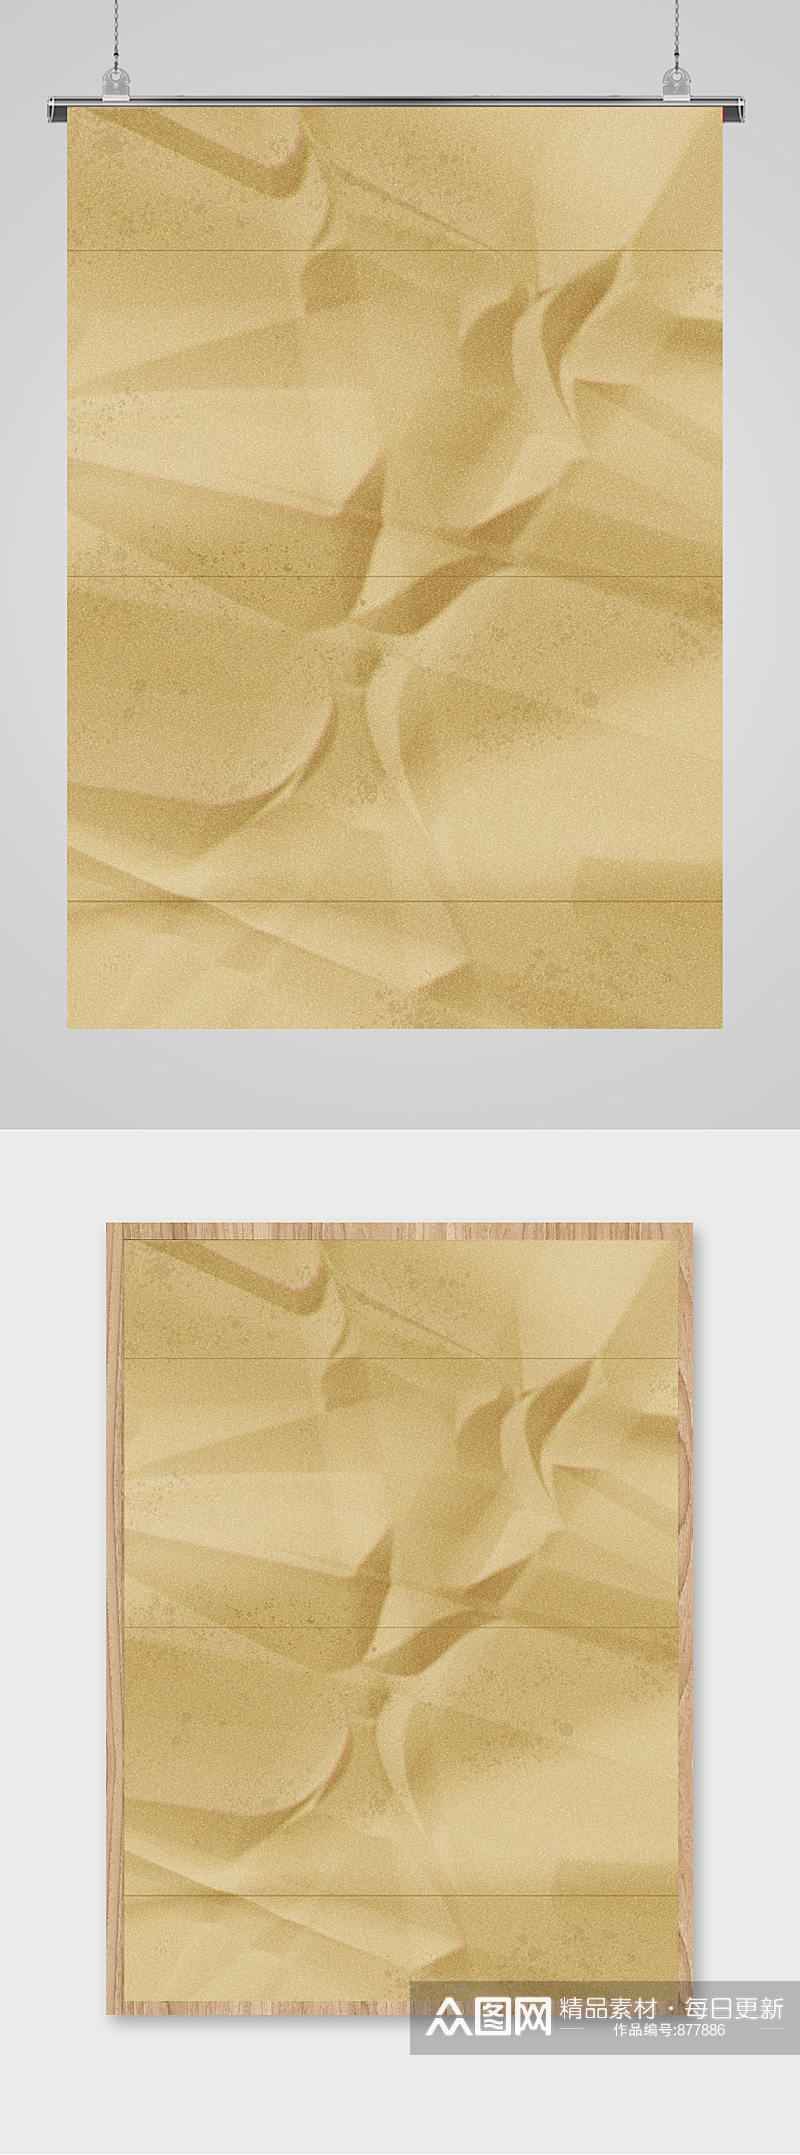 纸张折痕纹理背景素材